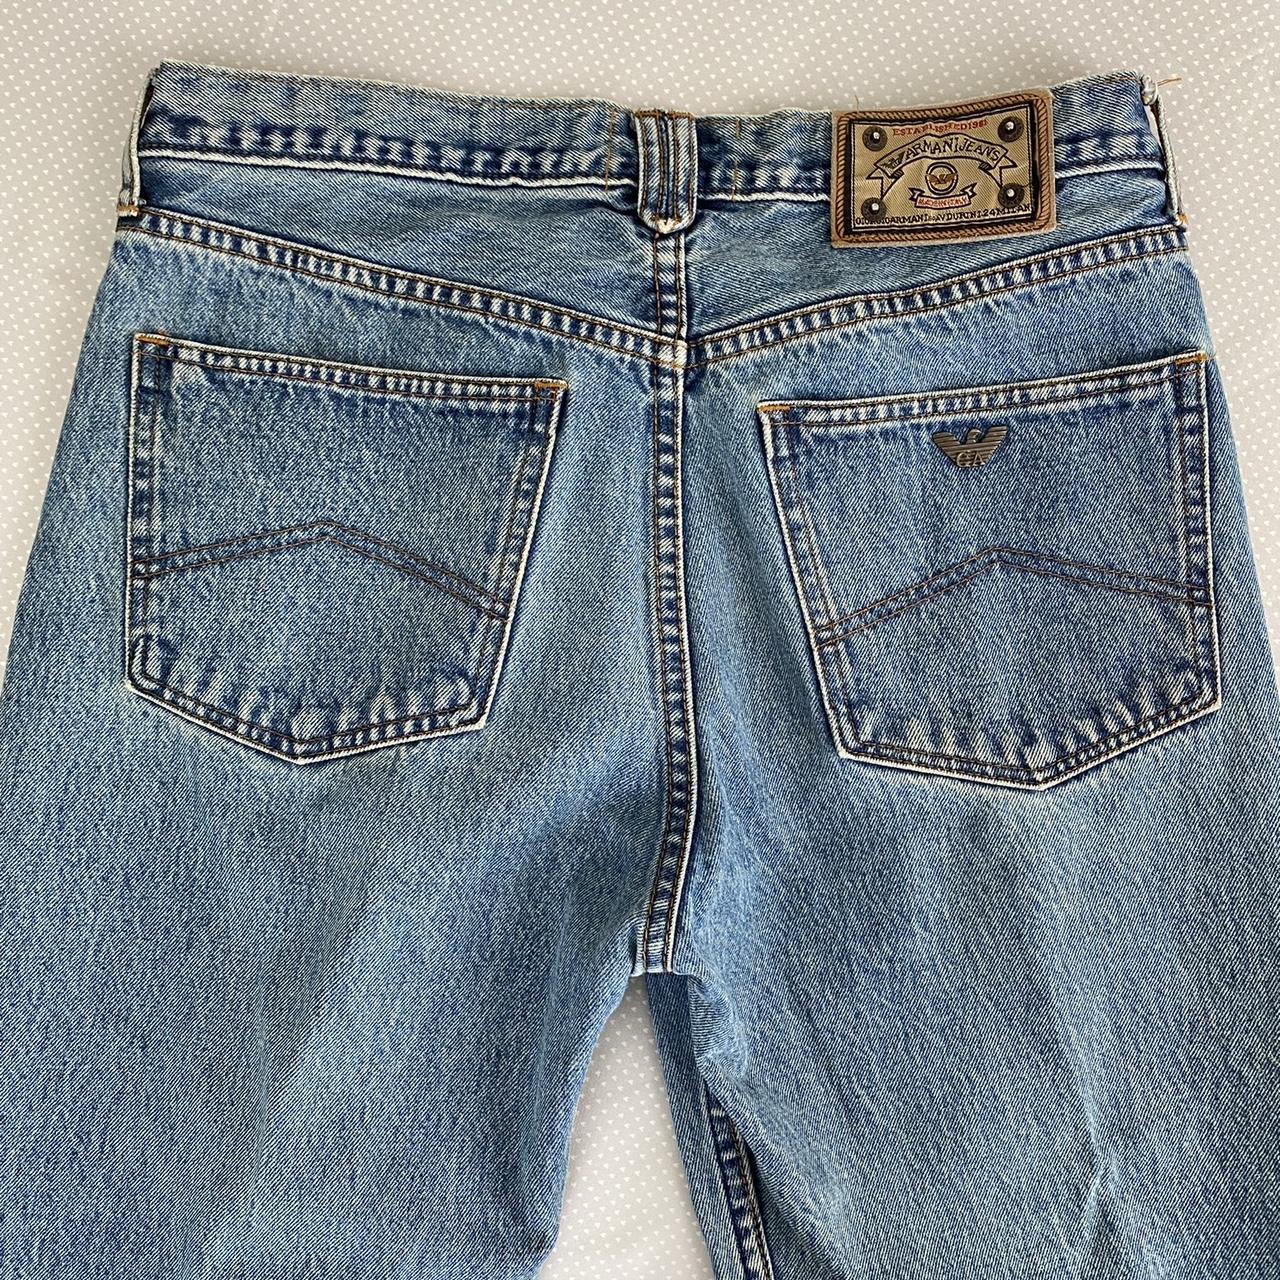 Armani Jeans Men's Blue Jeans (4)